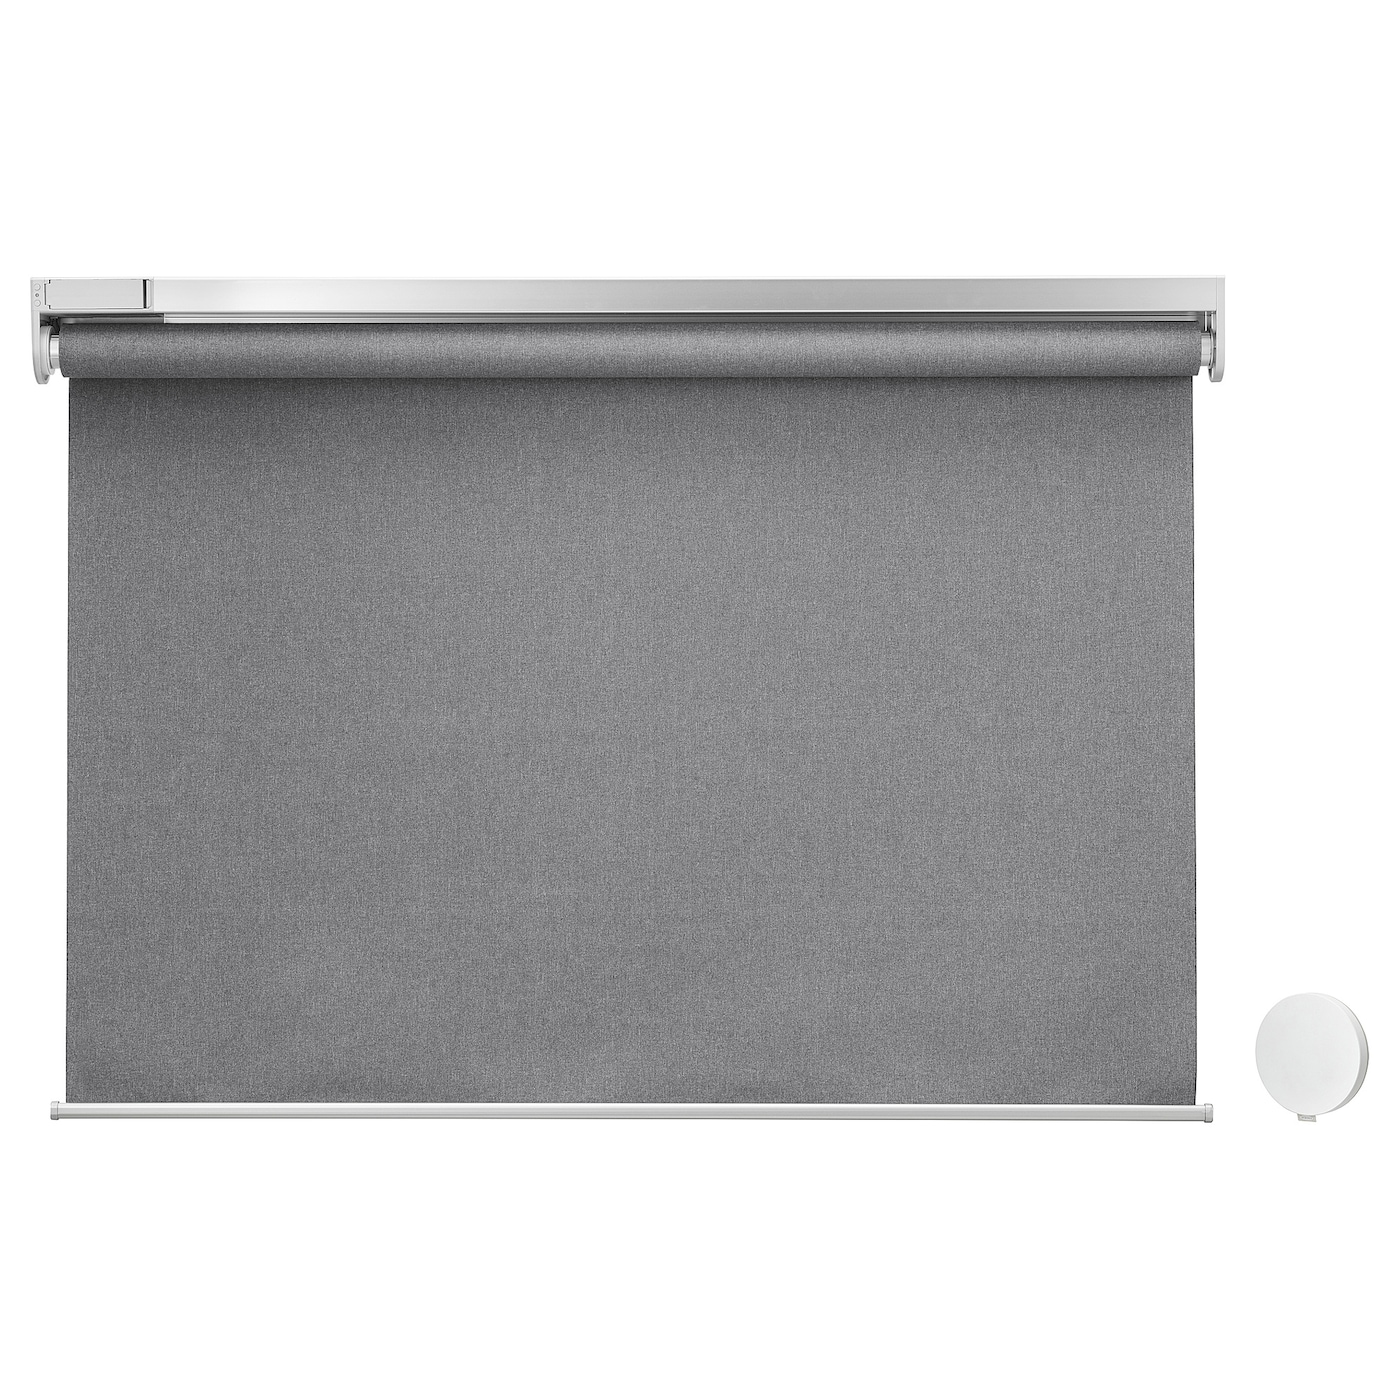 Рулонная штора с пультом управления (blackout) - IKEA FYRTUR, 195х80 см, серый, ФЮРТЮР ИКЕА